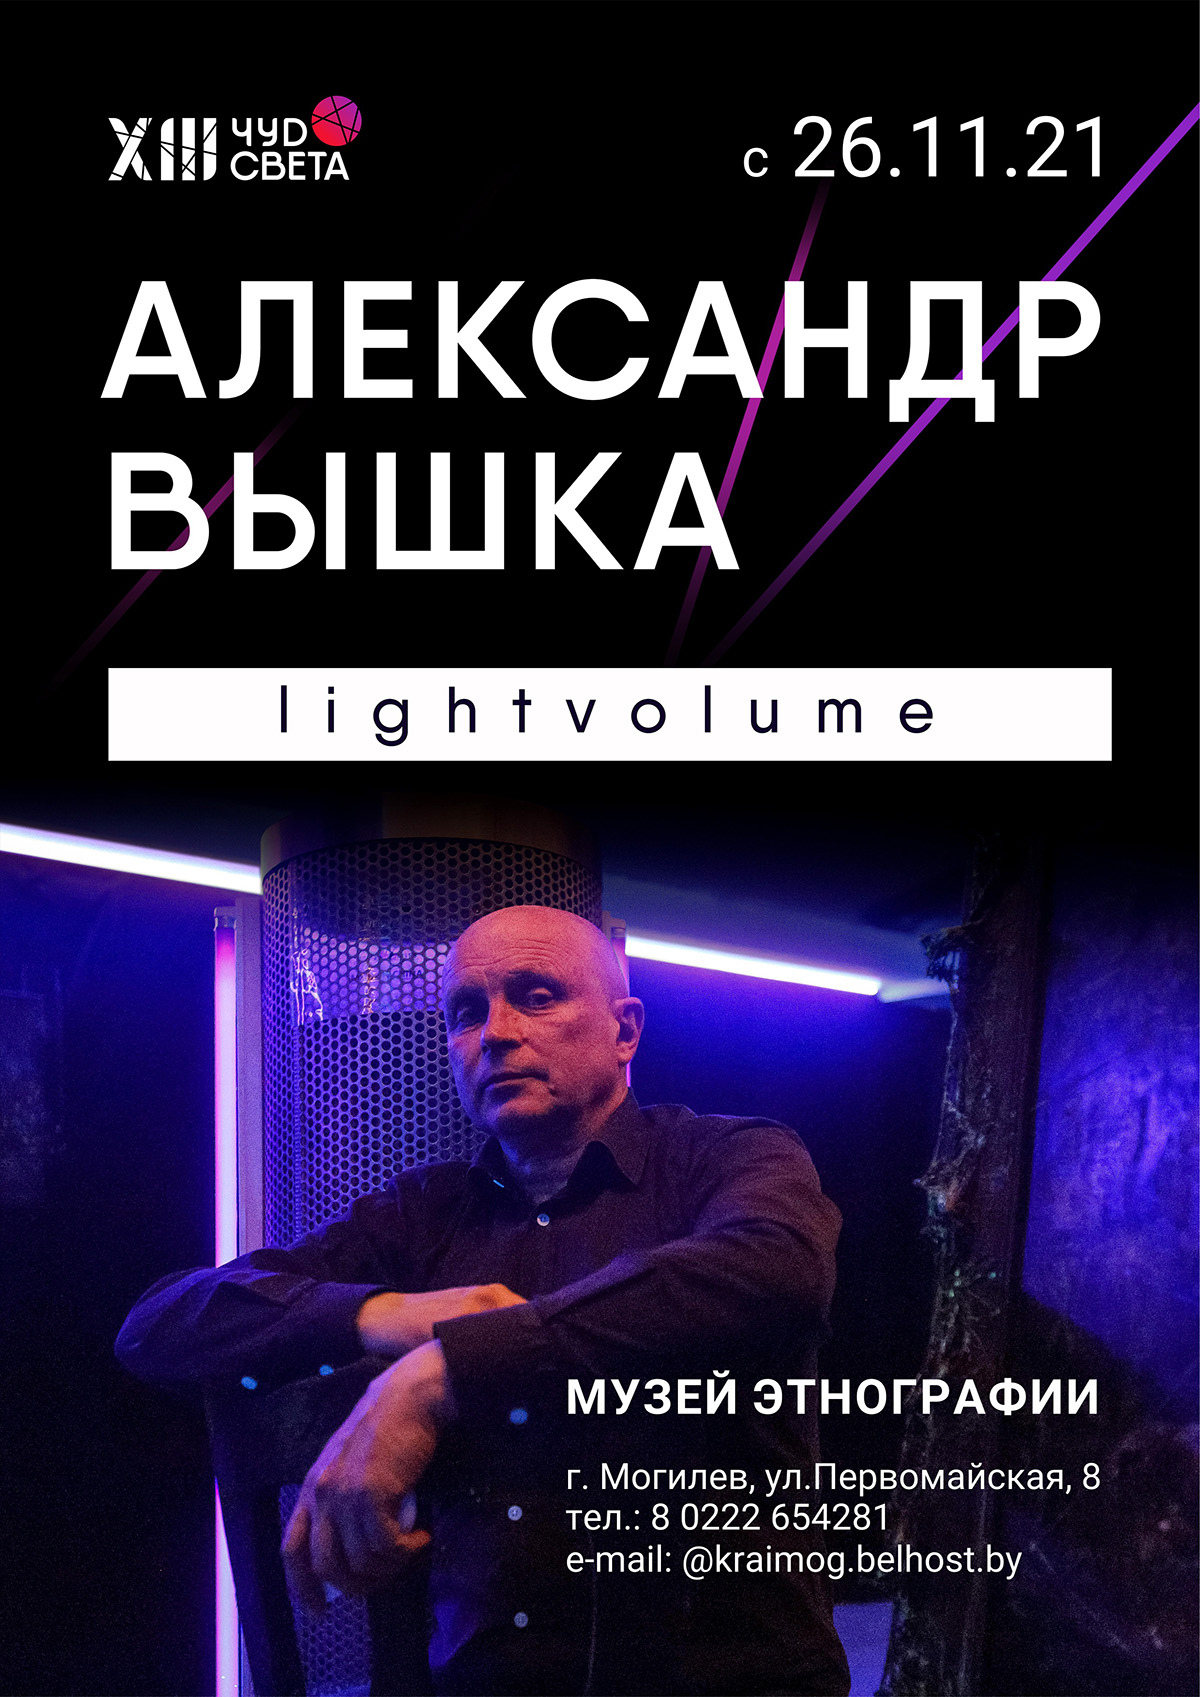 Светодинамическую живопись Александра Вышки можно будет увидеть в Могилеве с 26 ноября